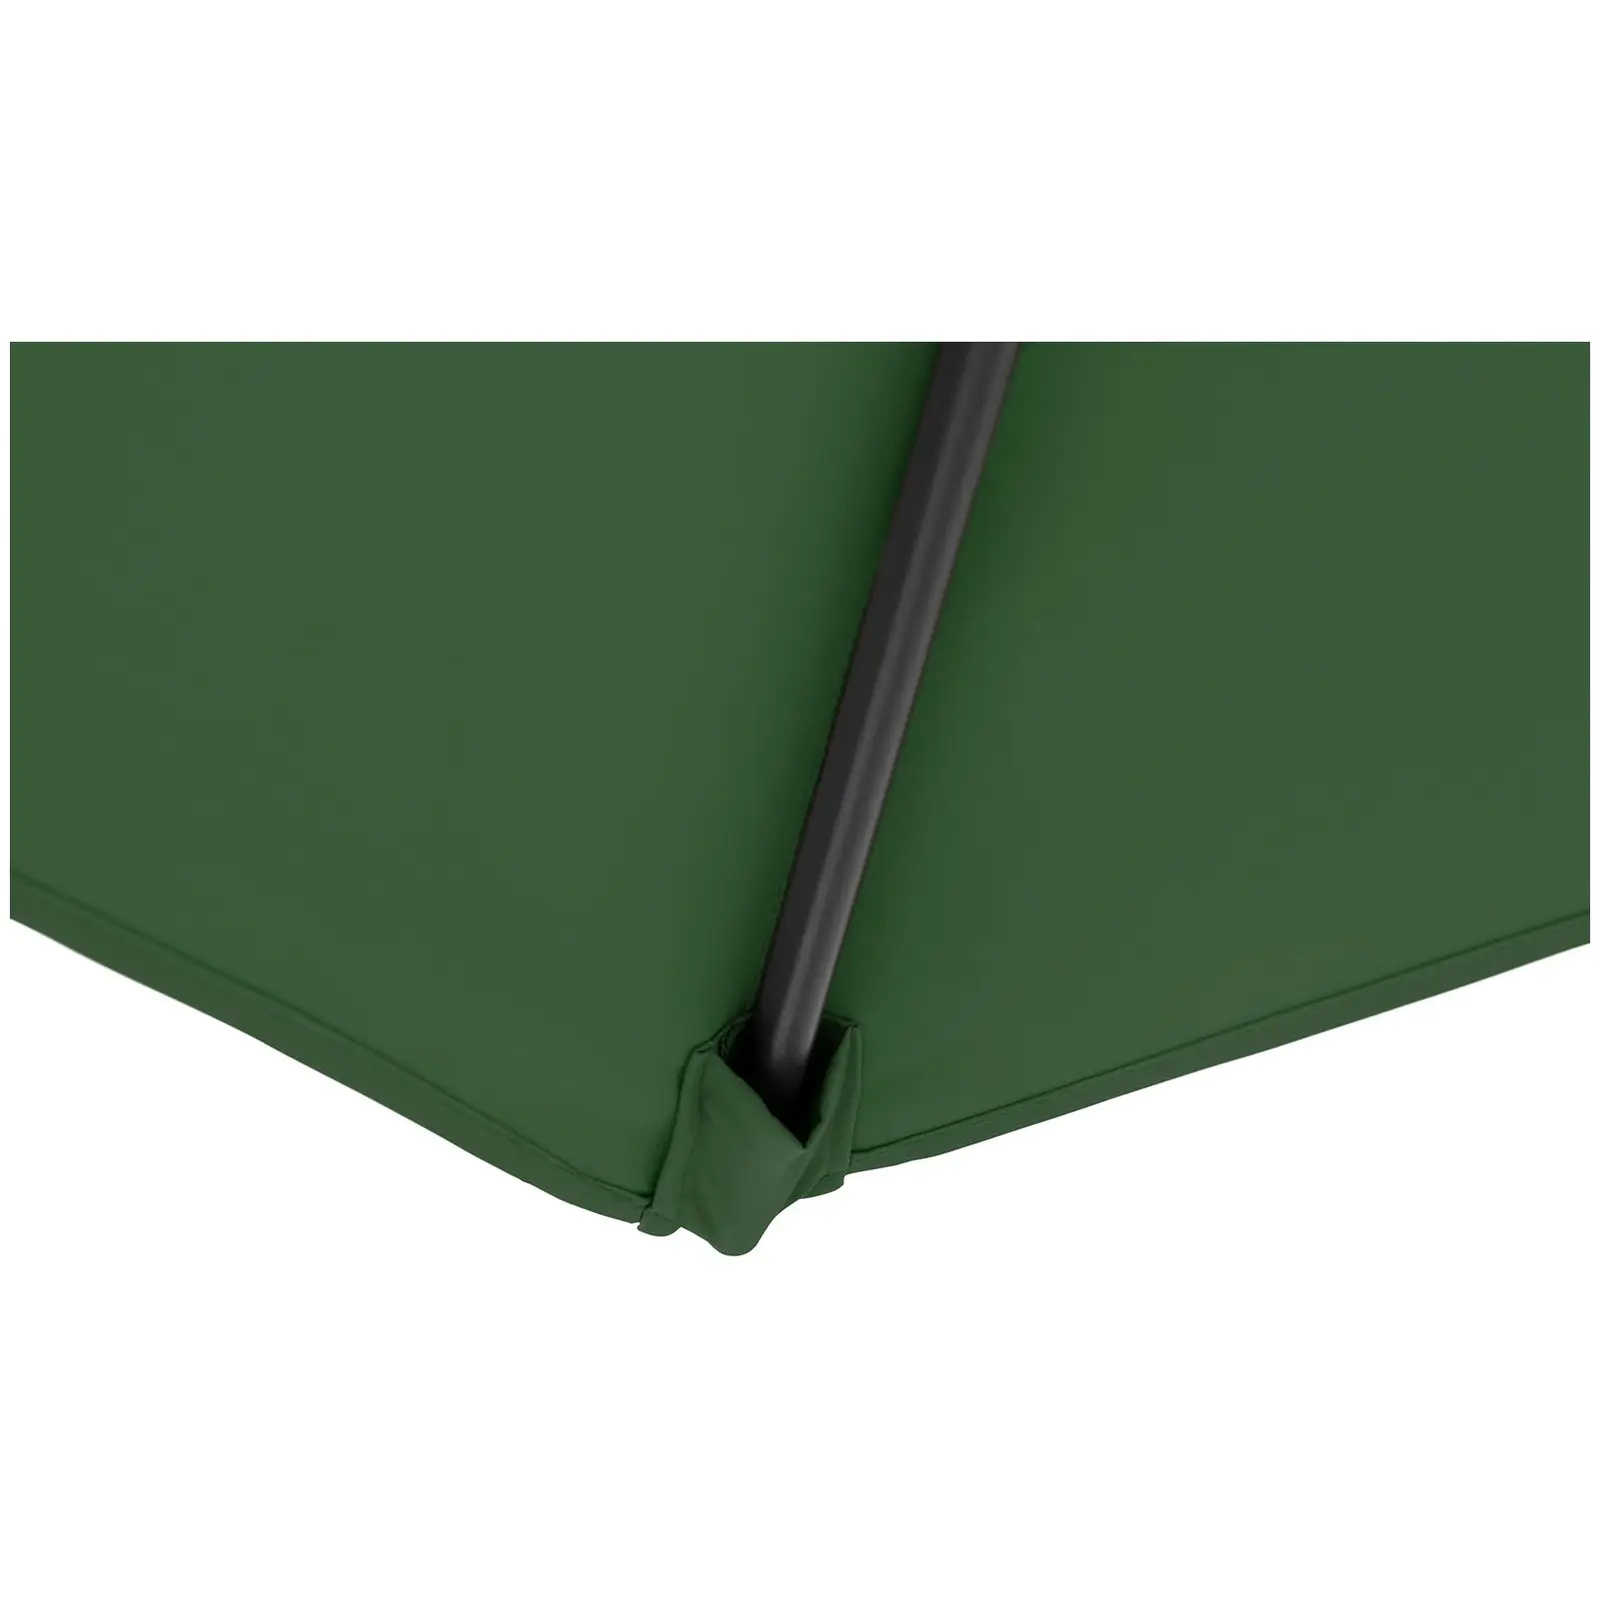 Hængeparasol - grøn - firkantet - 250 x 250 cm